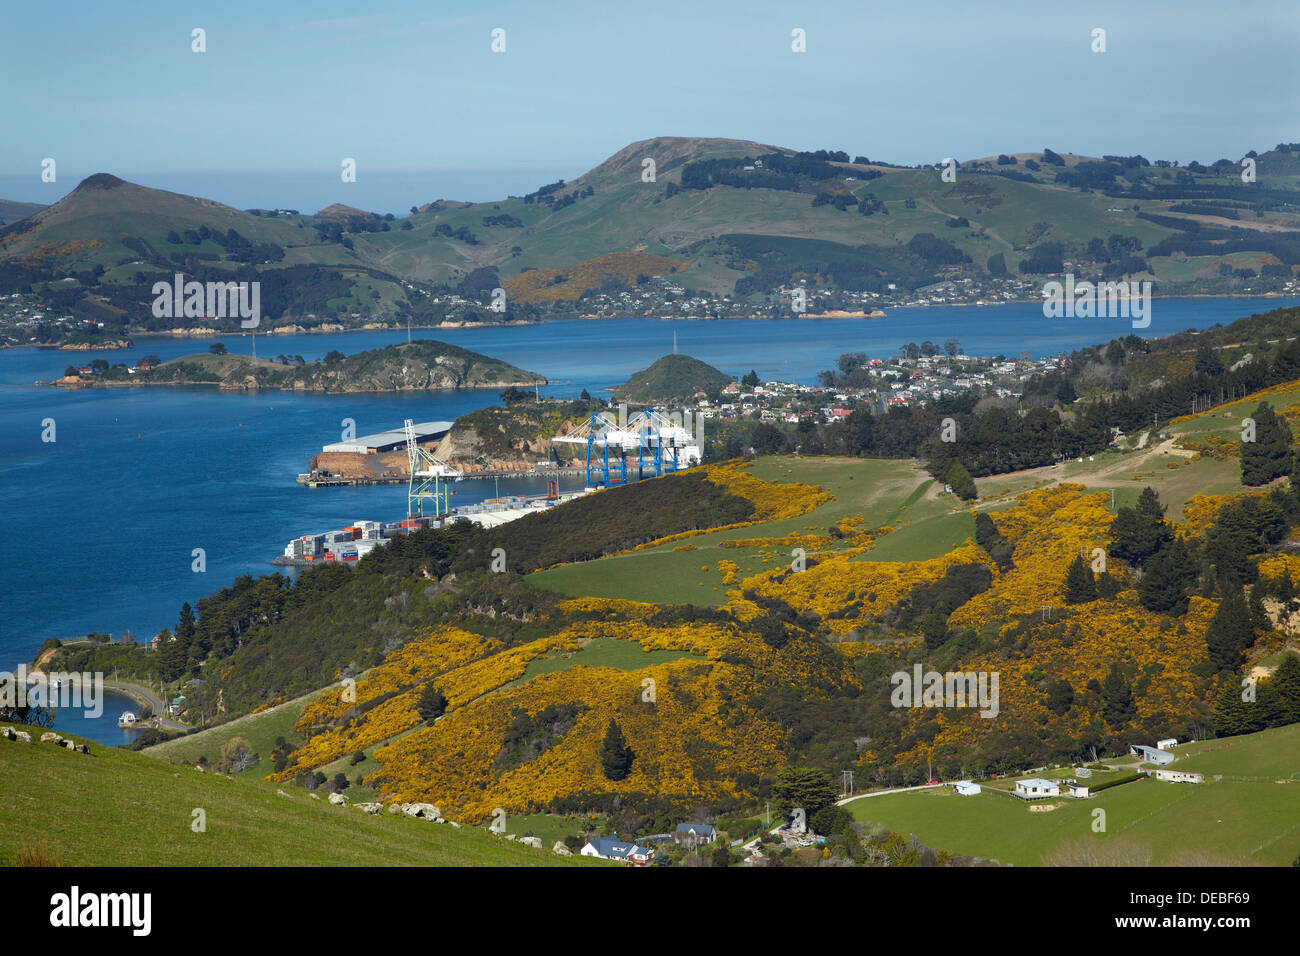 L'ajonc sur les terres agricoles, Port Chalmers, Otago Harbour et péninsule d'Otago, Dunedin, Otago, île du Sud, Nouvelle-Zélande Banque D'Images